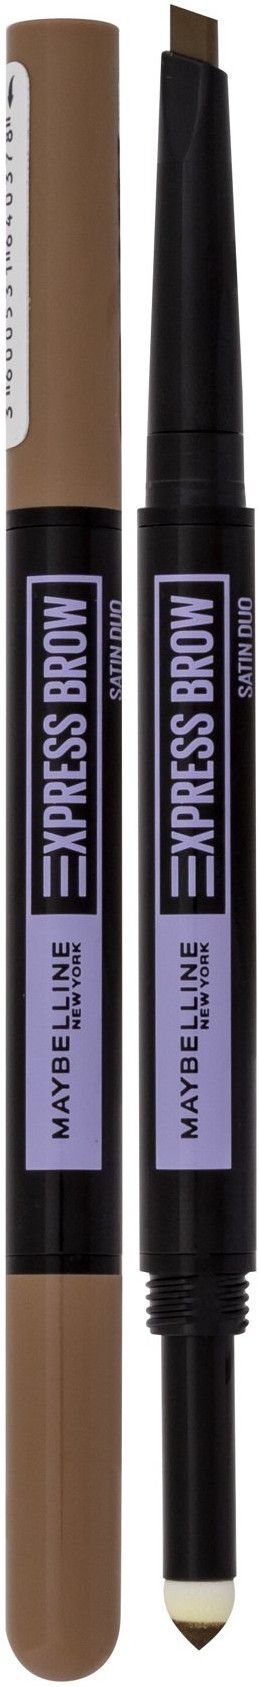 Maybelline Express 01 Duo Satin Brow Dark Blonde